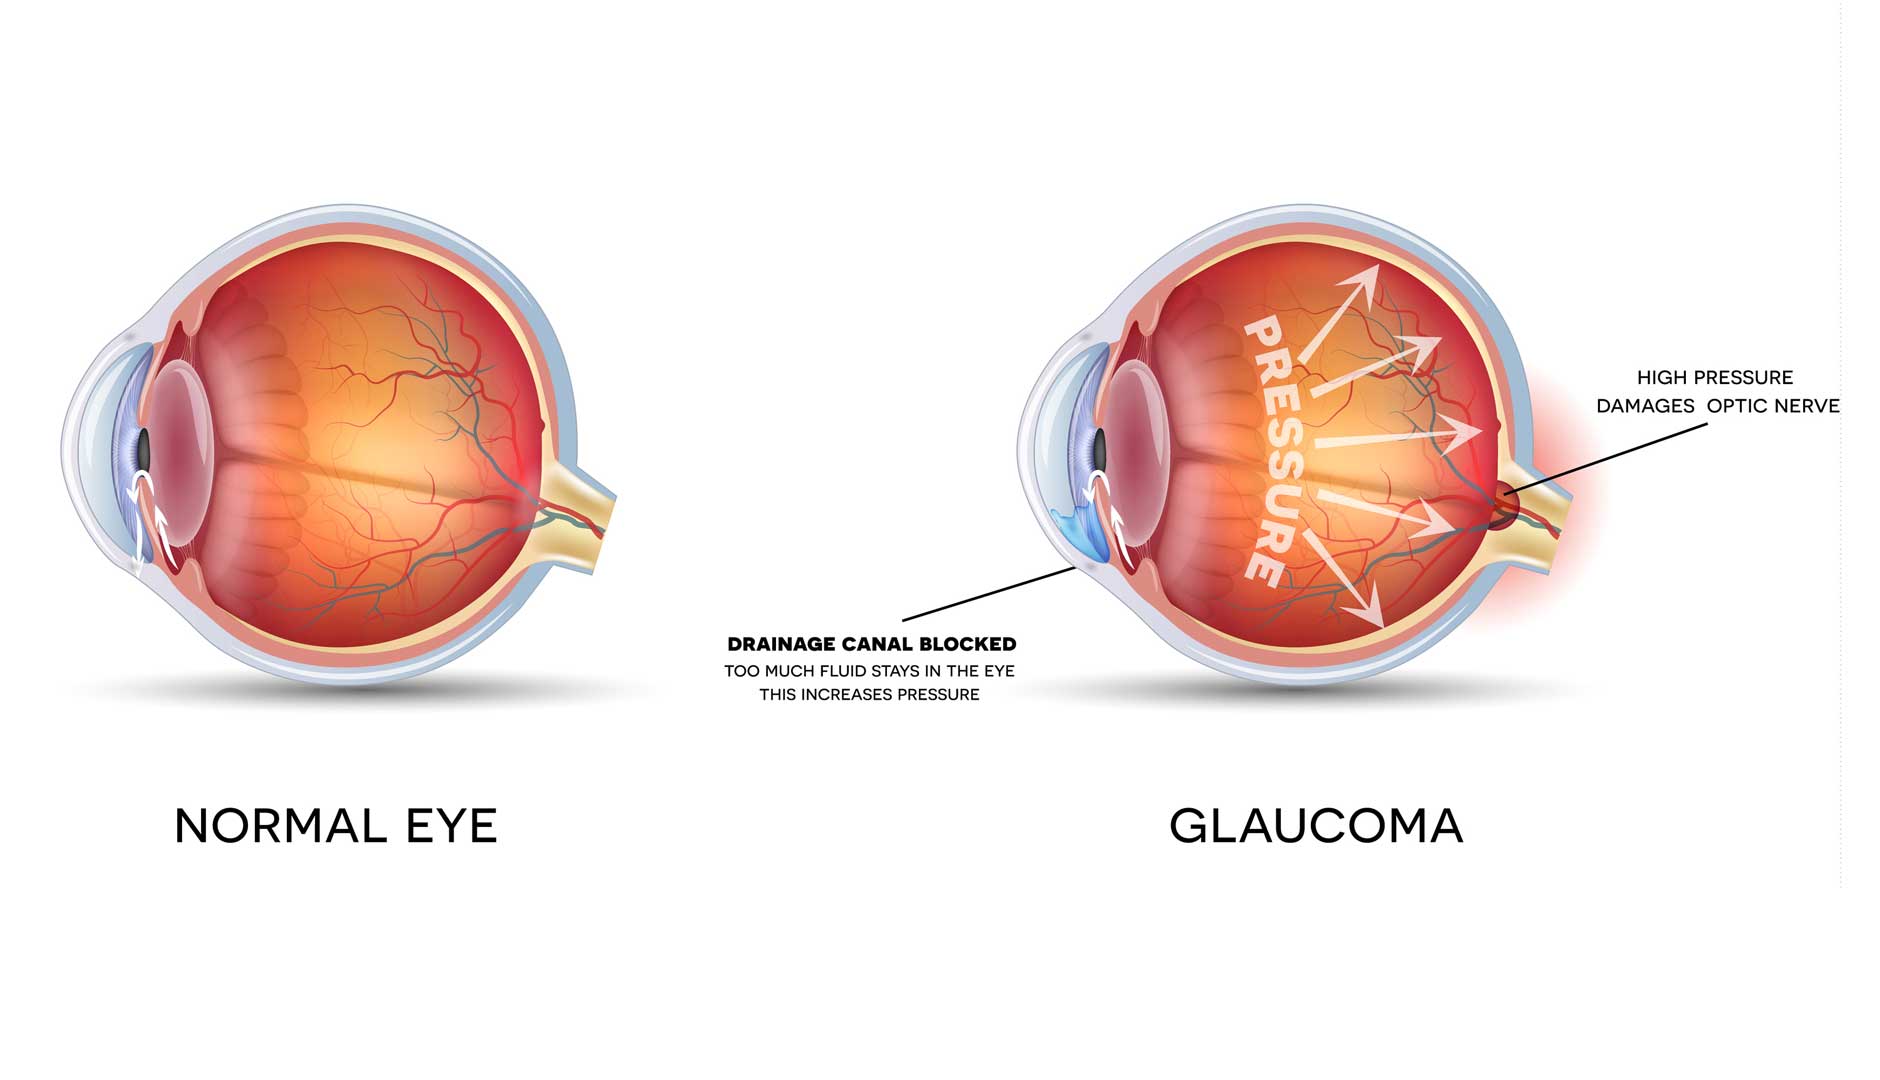 Glaucomul este o boala oculara grava, care frecvent conduce la orbire incurabila